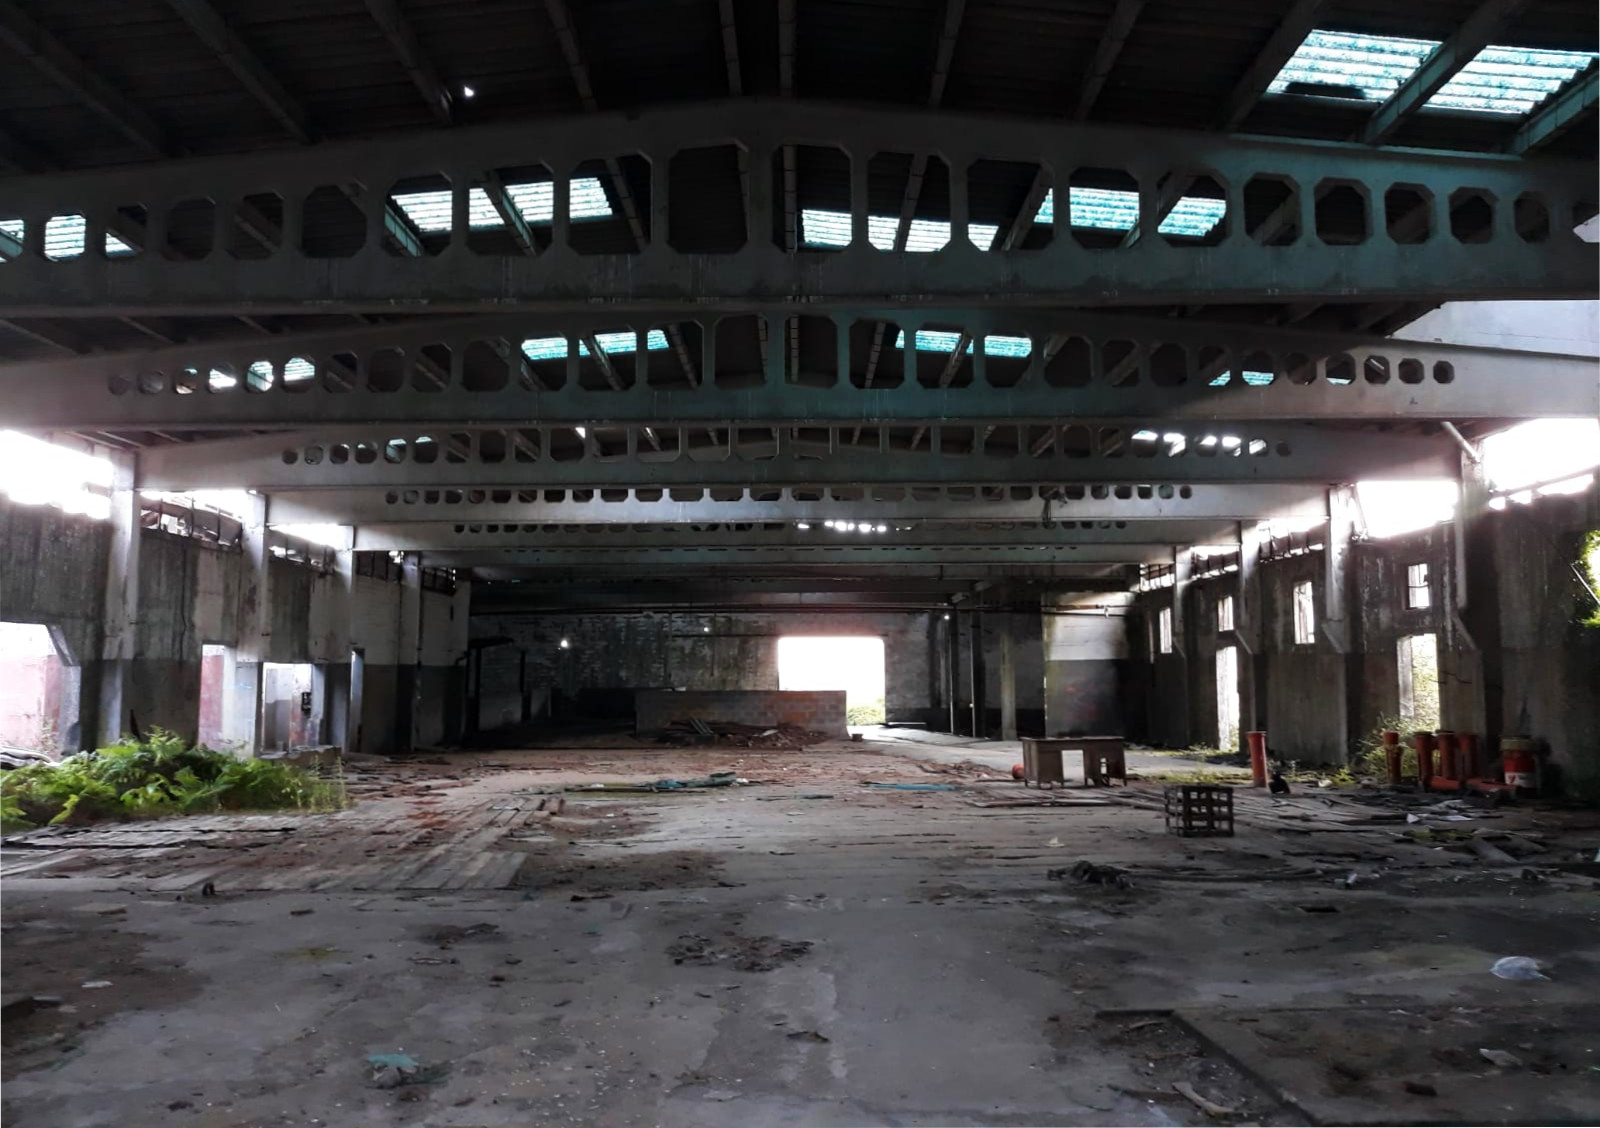 Imagen reciente del interior de la factoría de Caneliñas. Foto: R. Pan.